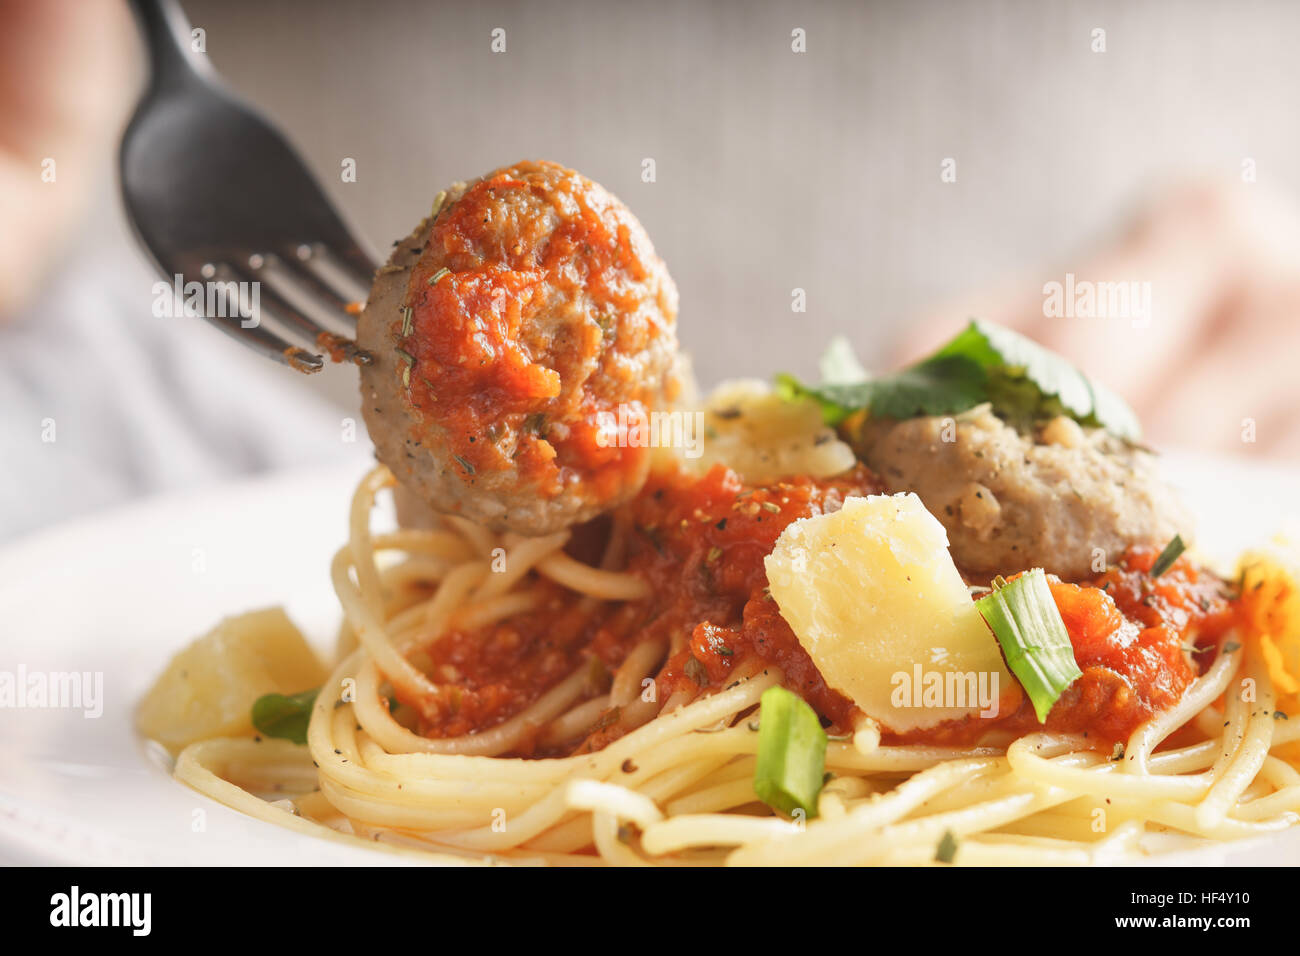 Spaghetti mit Fleischbällchen horizontale nah zu essen, bis Frau Stockfoto